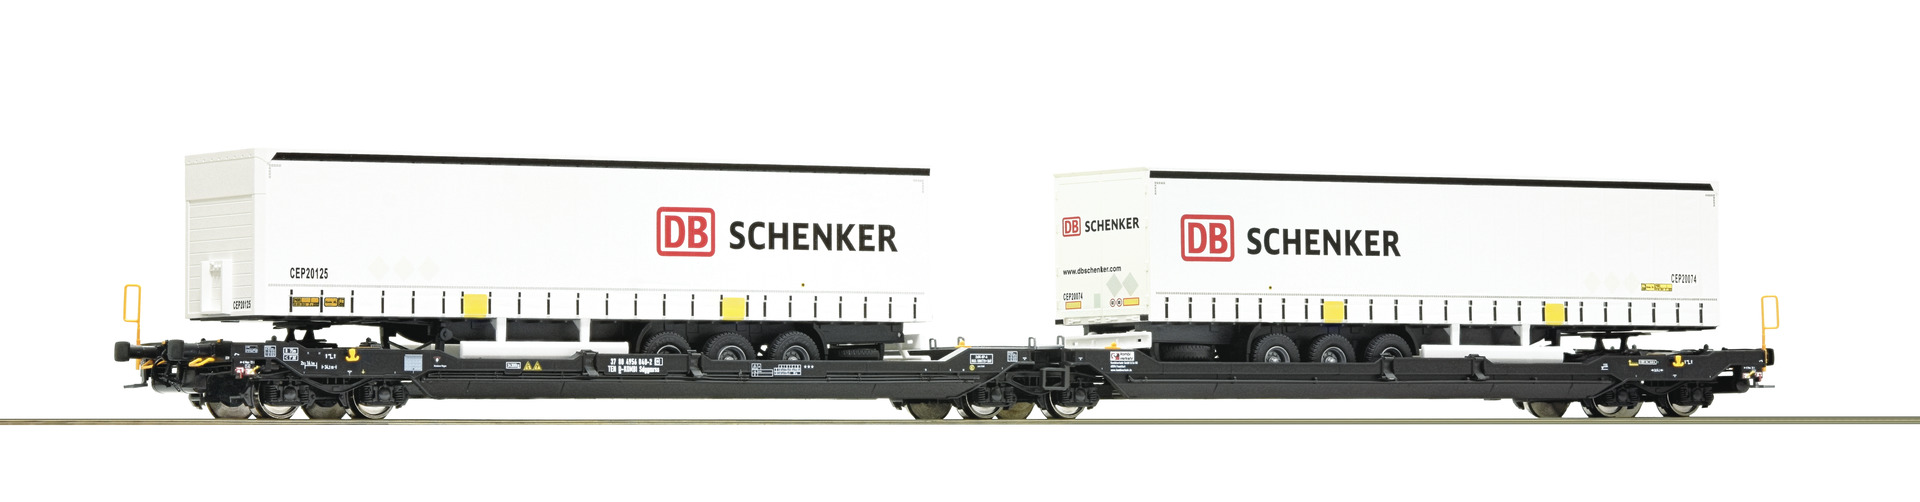 Roco 77390 H0 Dubbele containerwagen T3000e + DB schenker trailer